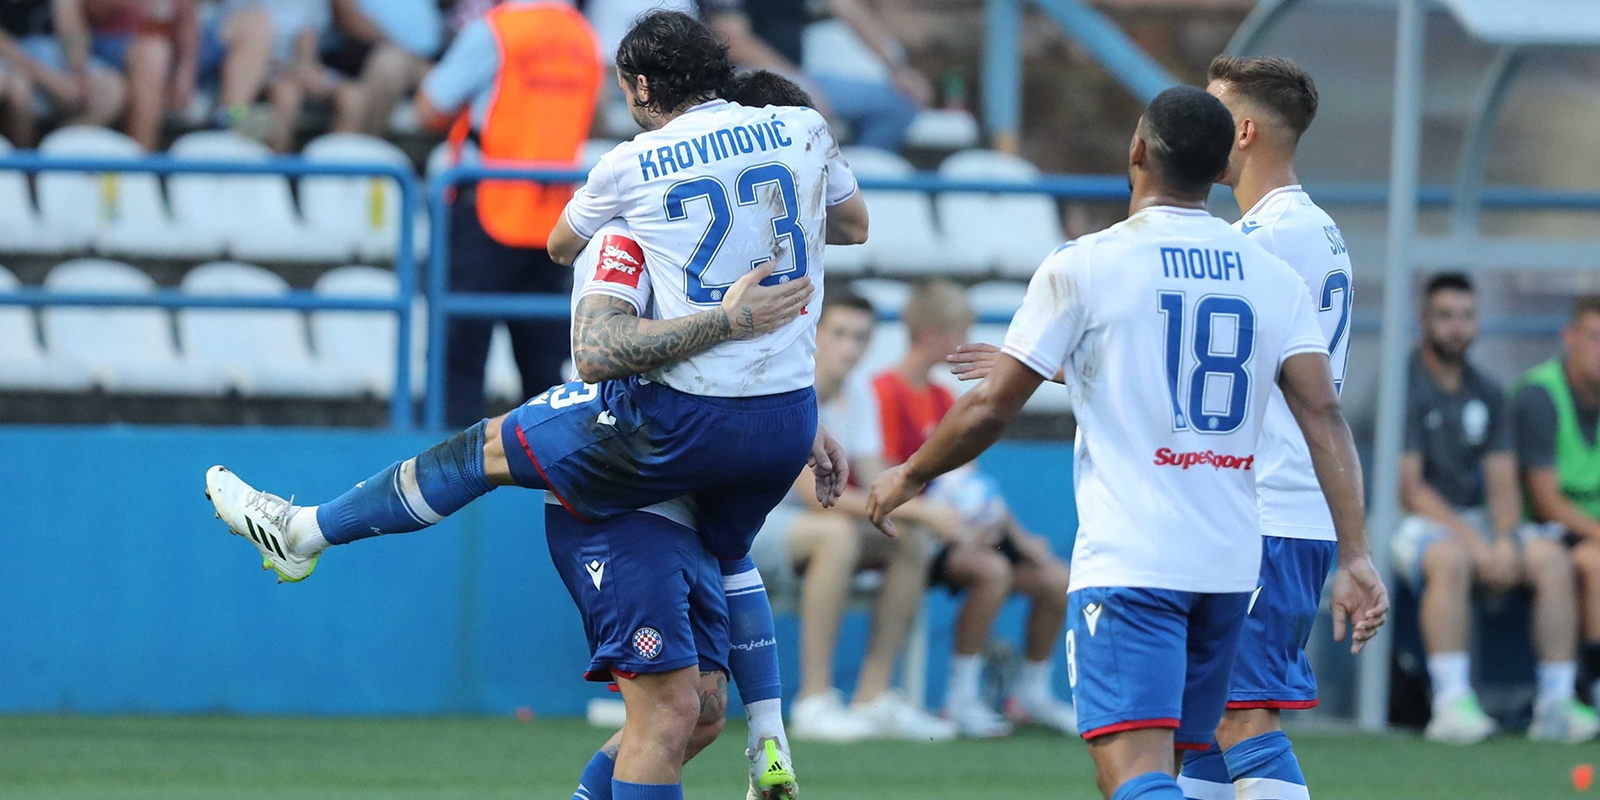 HNK Hajduk Split🇭🇷 - em Português🇵🇹🇧🇷 on X: HOJE!!! ⚽🇭🇷: NK  Varaždin vs. Hajduk Split 📆: 12/12 (sábado); 🕑: 13:05H (Brasil🇧🇷);  16:05H (Portugal🇵🇹); 17:05H (Croácia🇭🇷); 🏆: Campeonato Croata (1.HNL)  - 15° rodada;